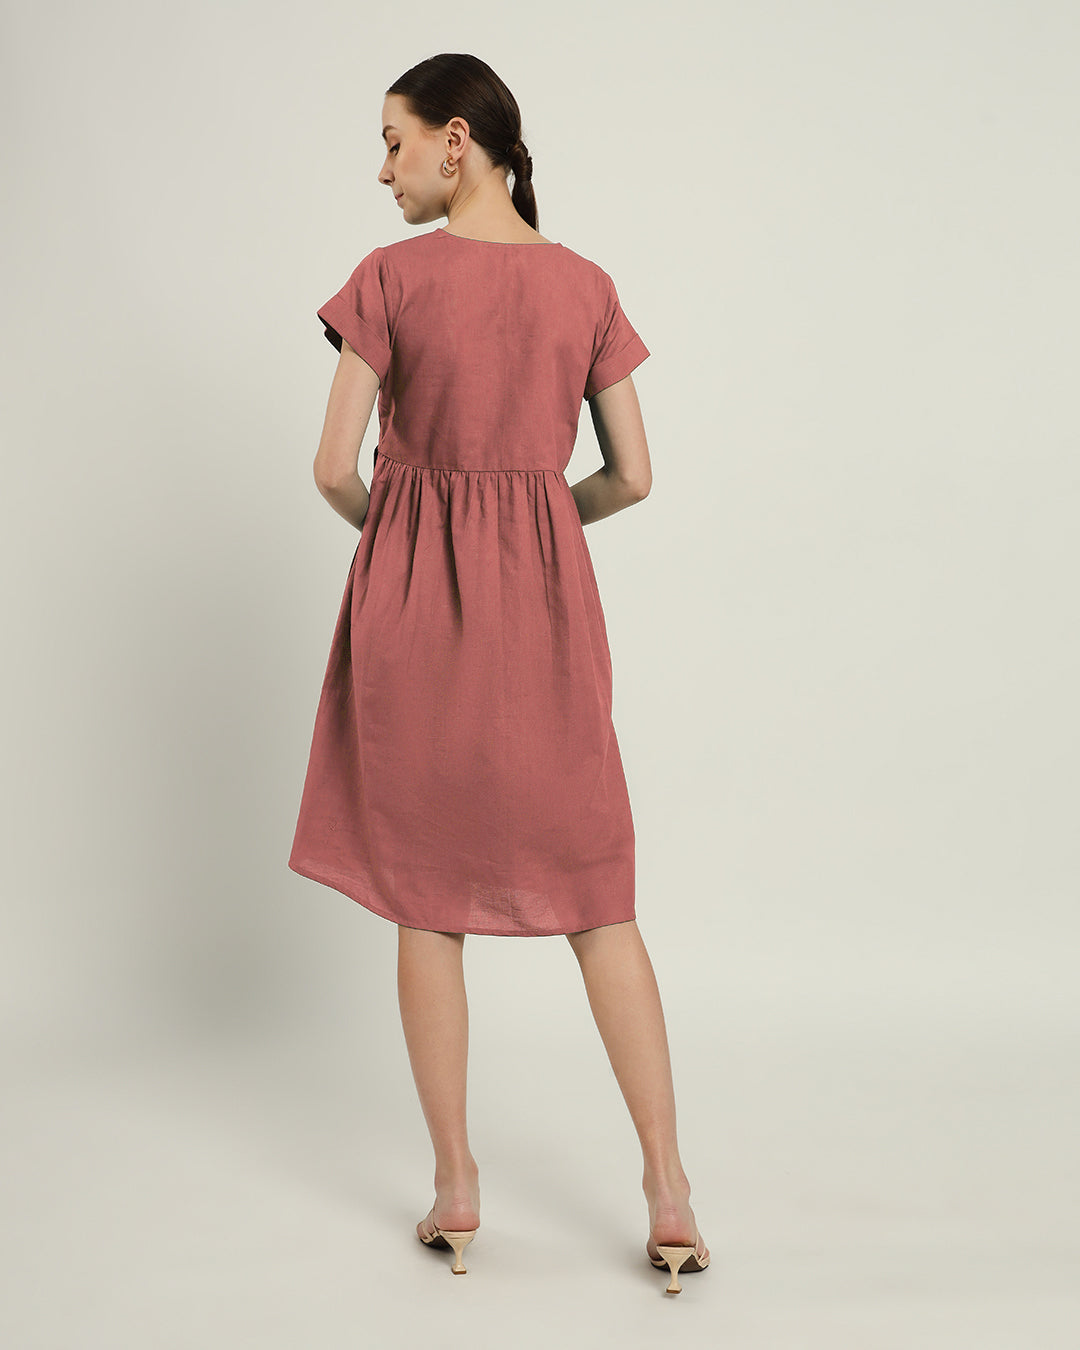 The Valence Ivory Pink Cotton Dress